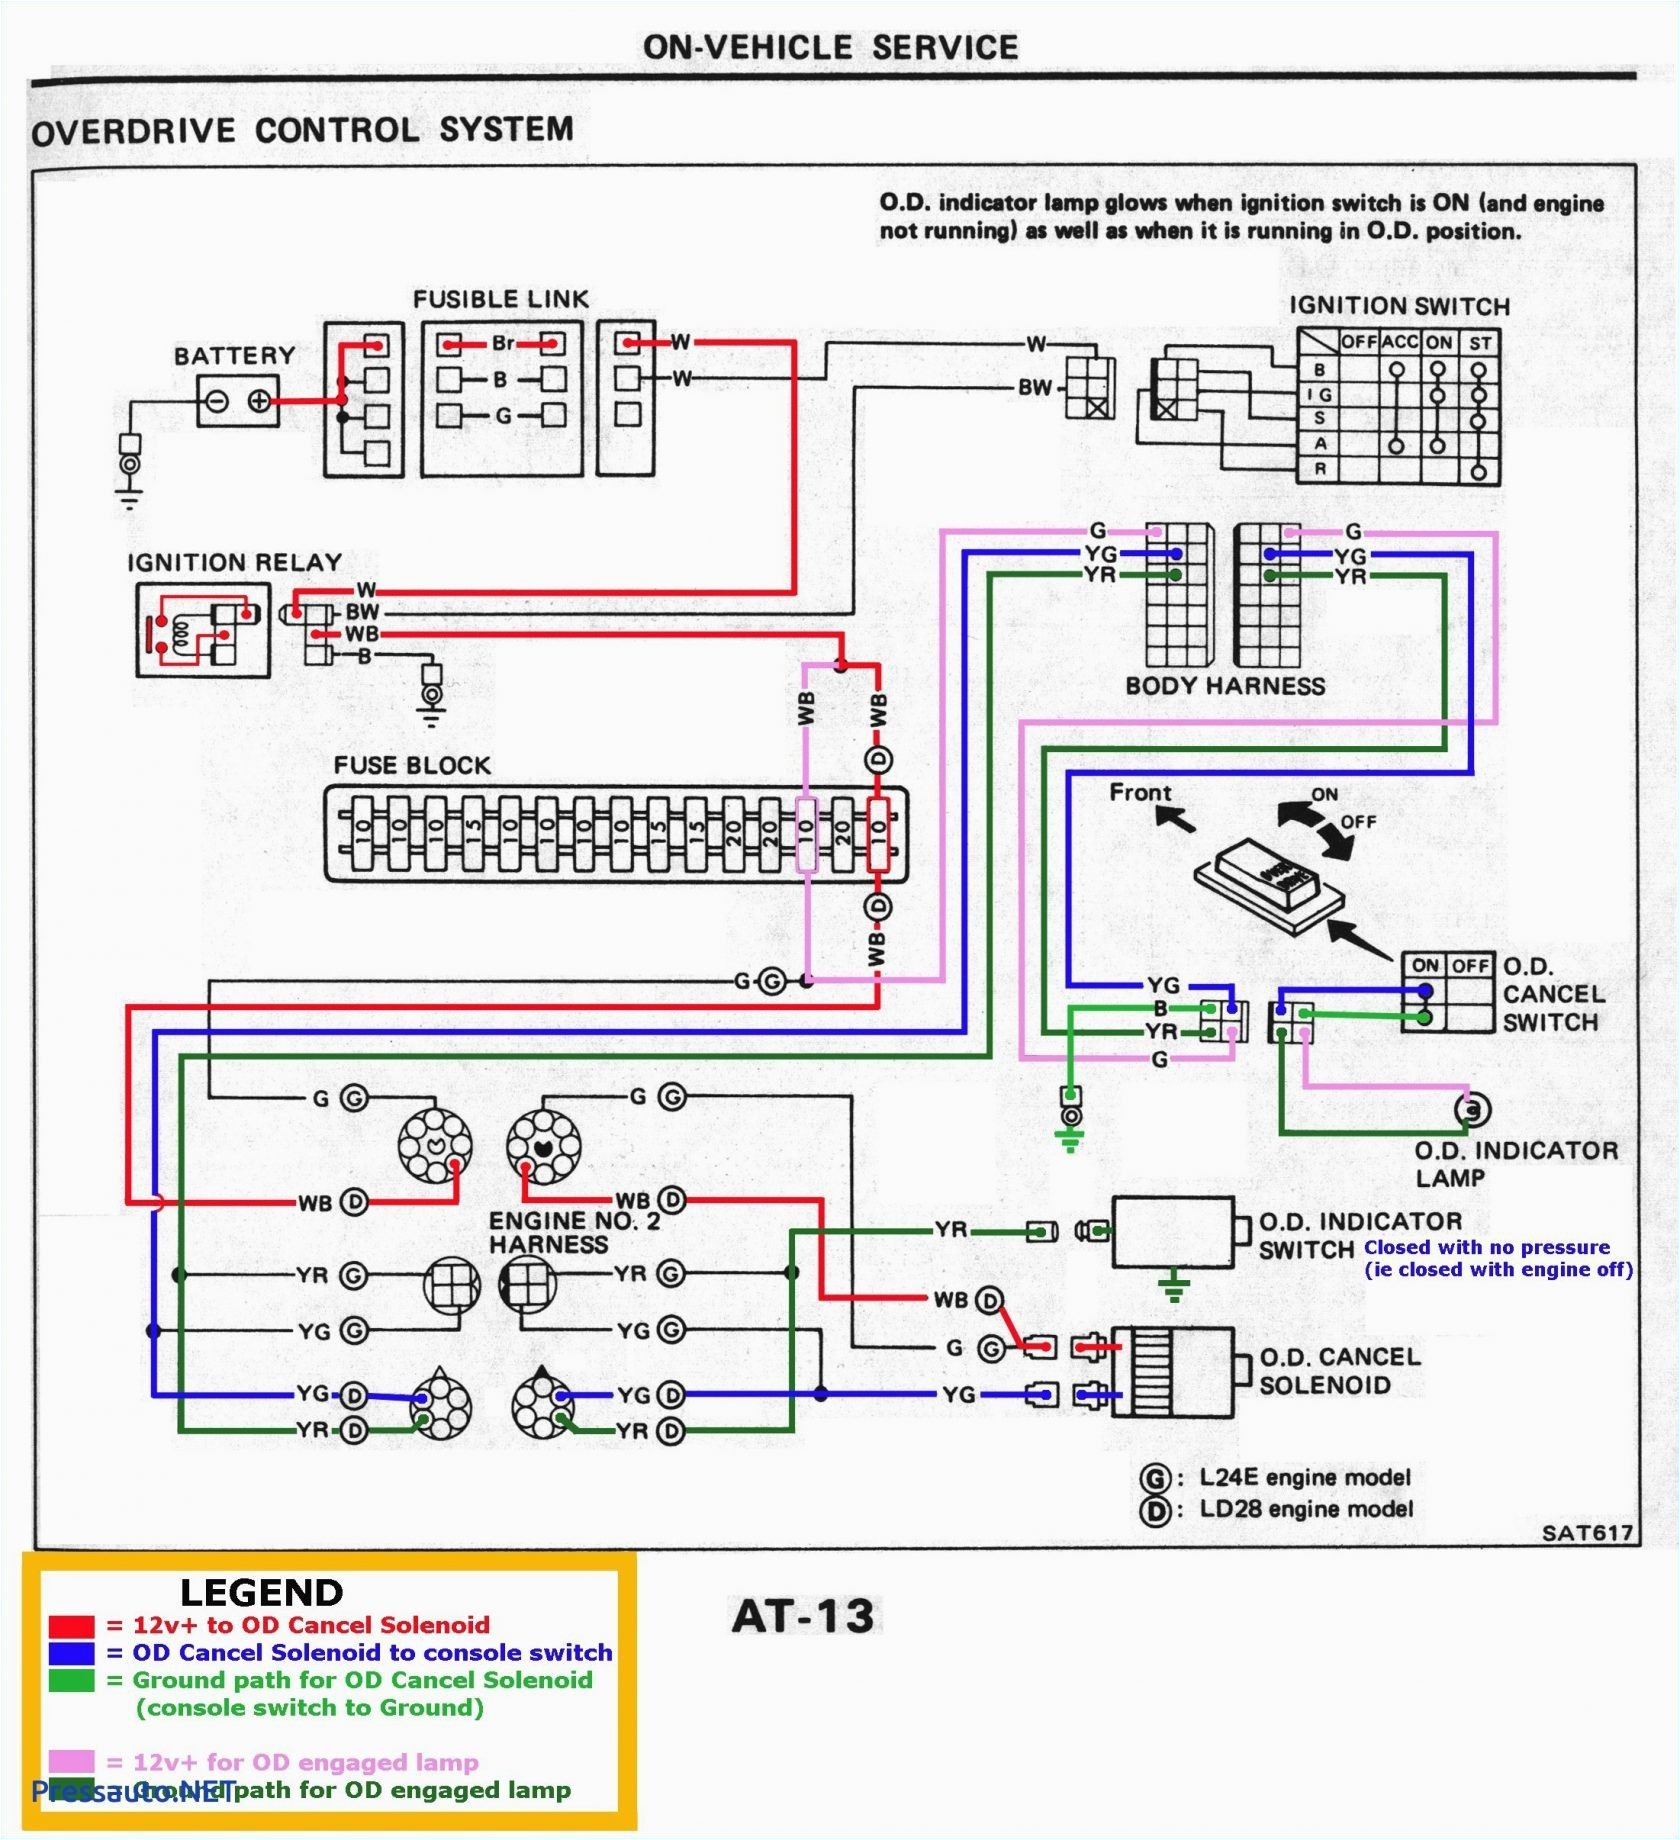 r22 wiring diagram wiring diagram name r22 wiring diagram